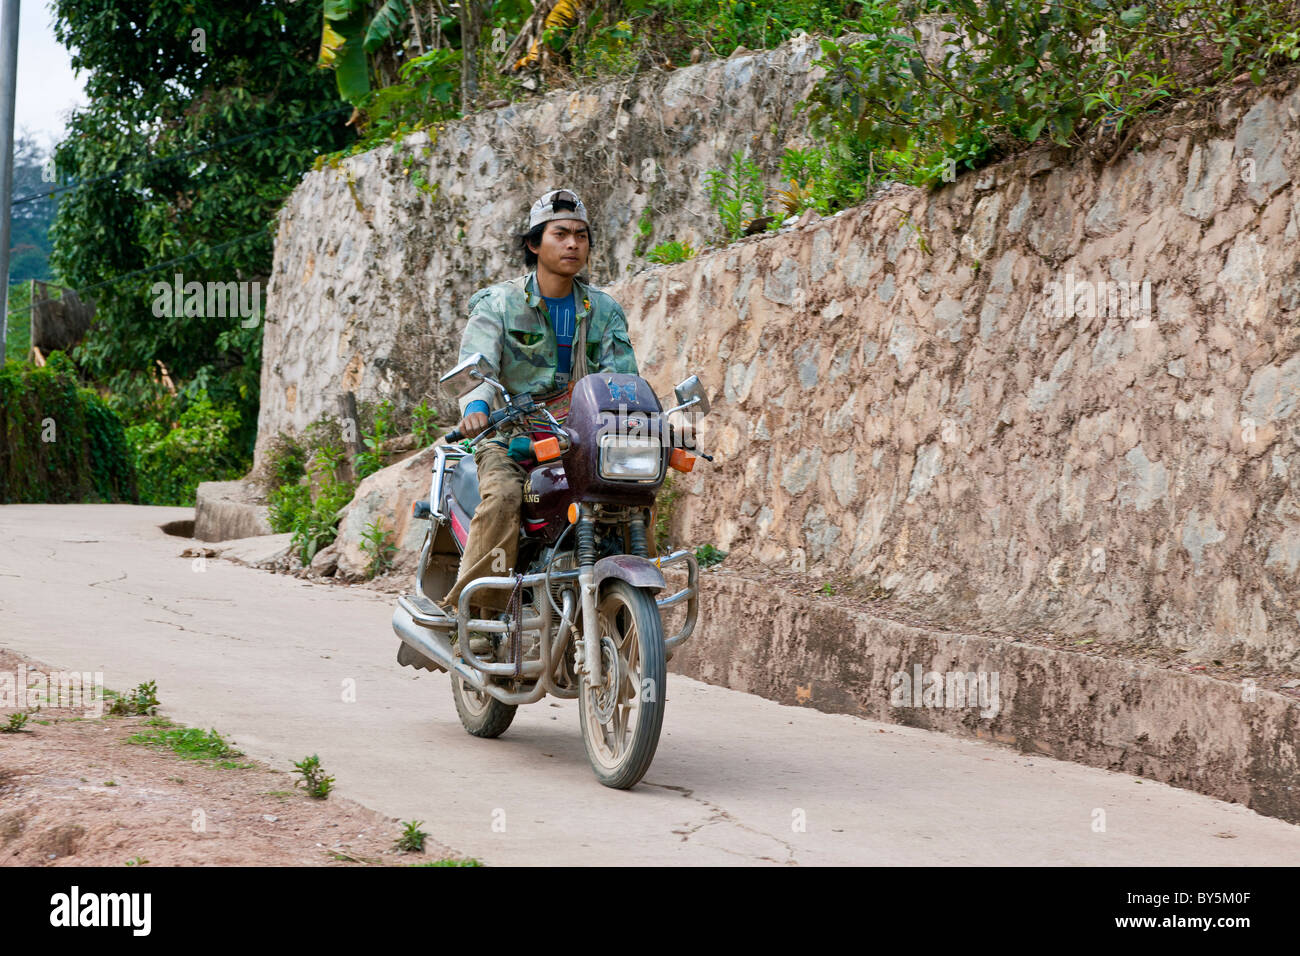 Man on motorcycle Jinuo Luoke (Jinuo Shan), Jinghong, Xishuangbanna, Yunnan Province, People's Republic of China. JMH4307 Stock Photo